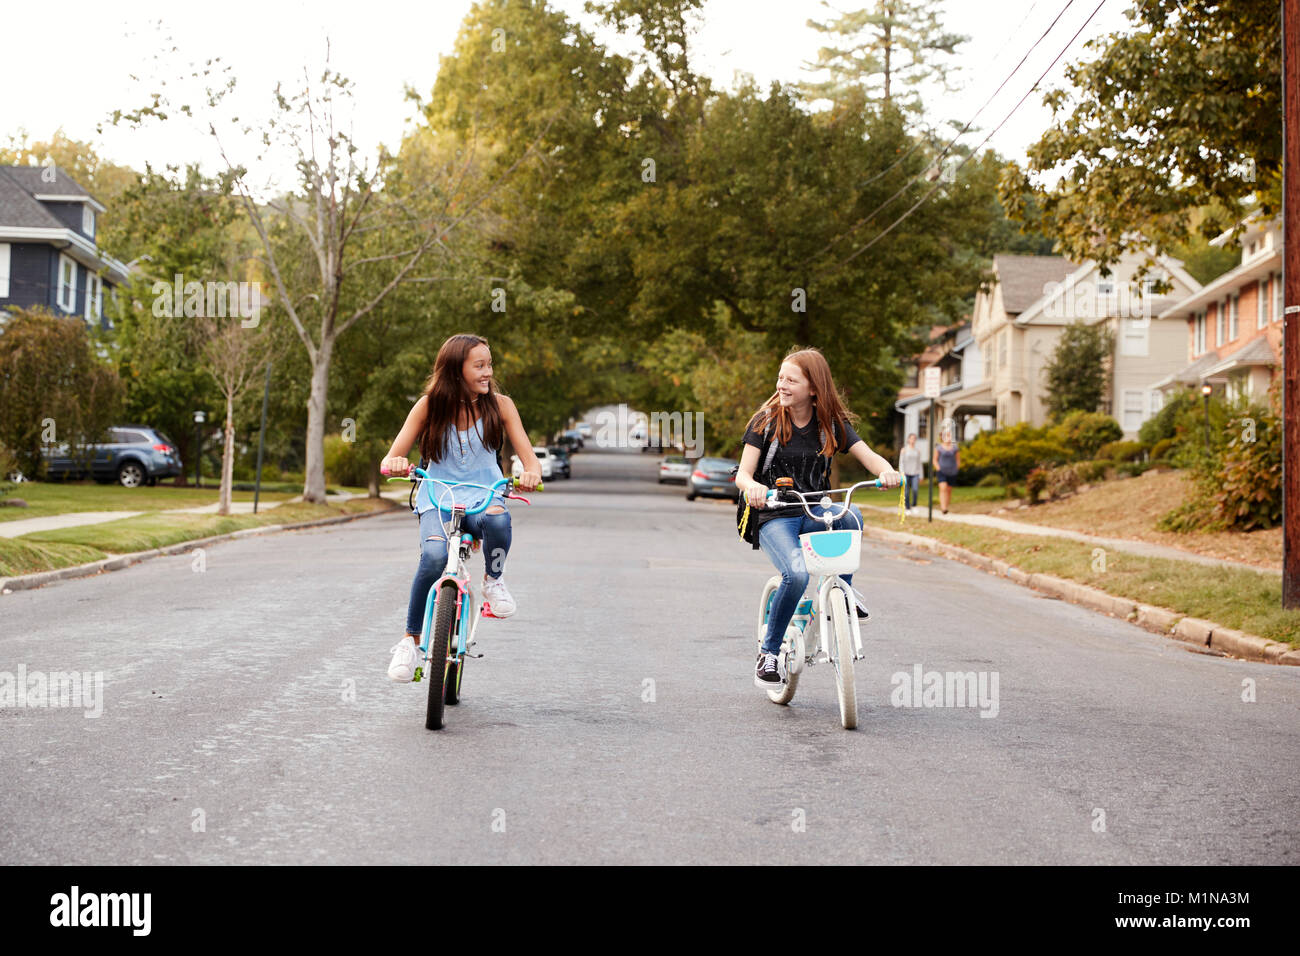 Zwei jugendlich Mädchen reiten Fahrräder in einer ruhigen Straße, Vorderansicht Stockfoto